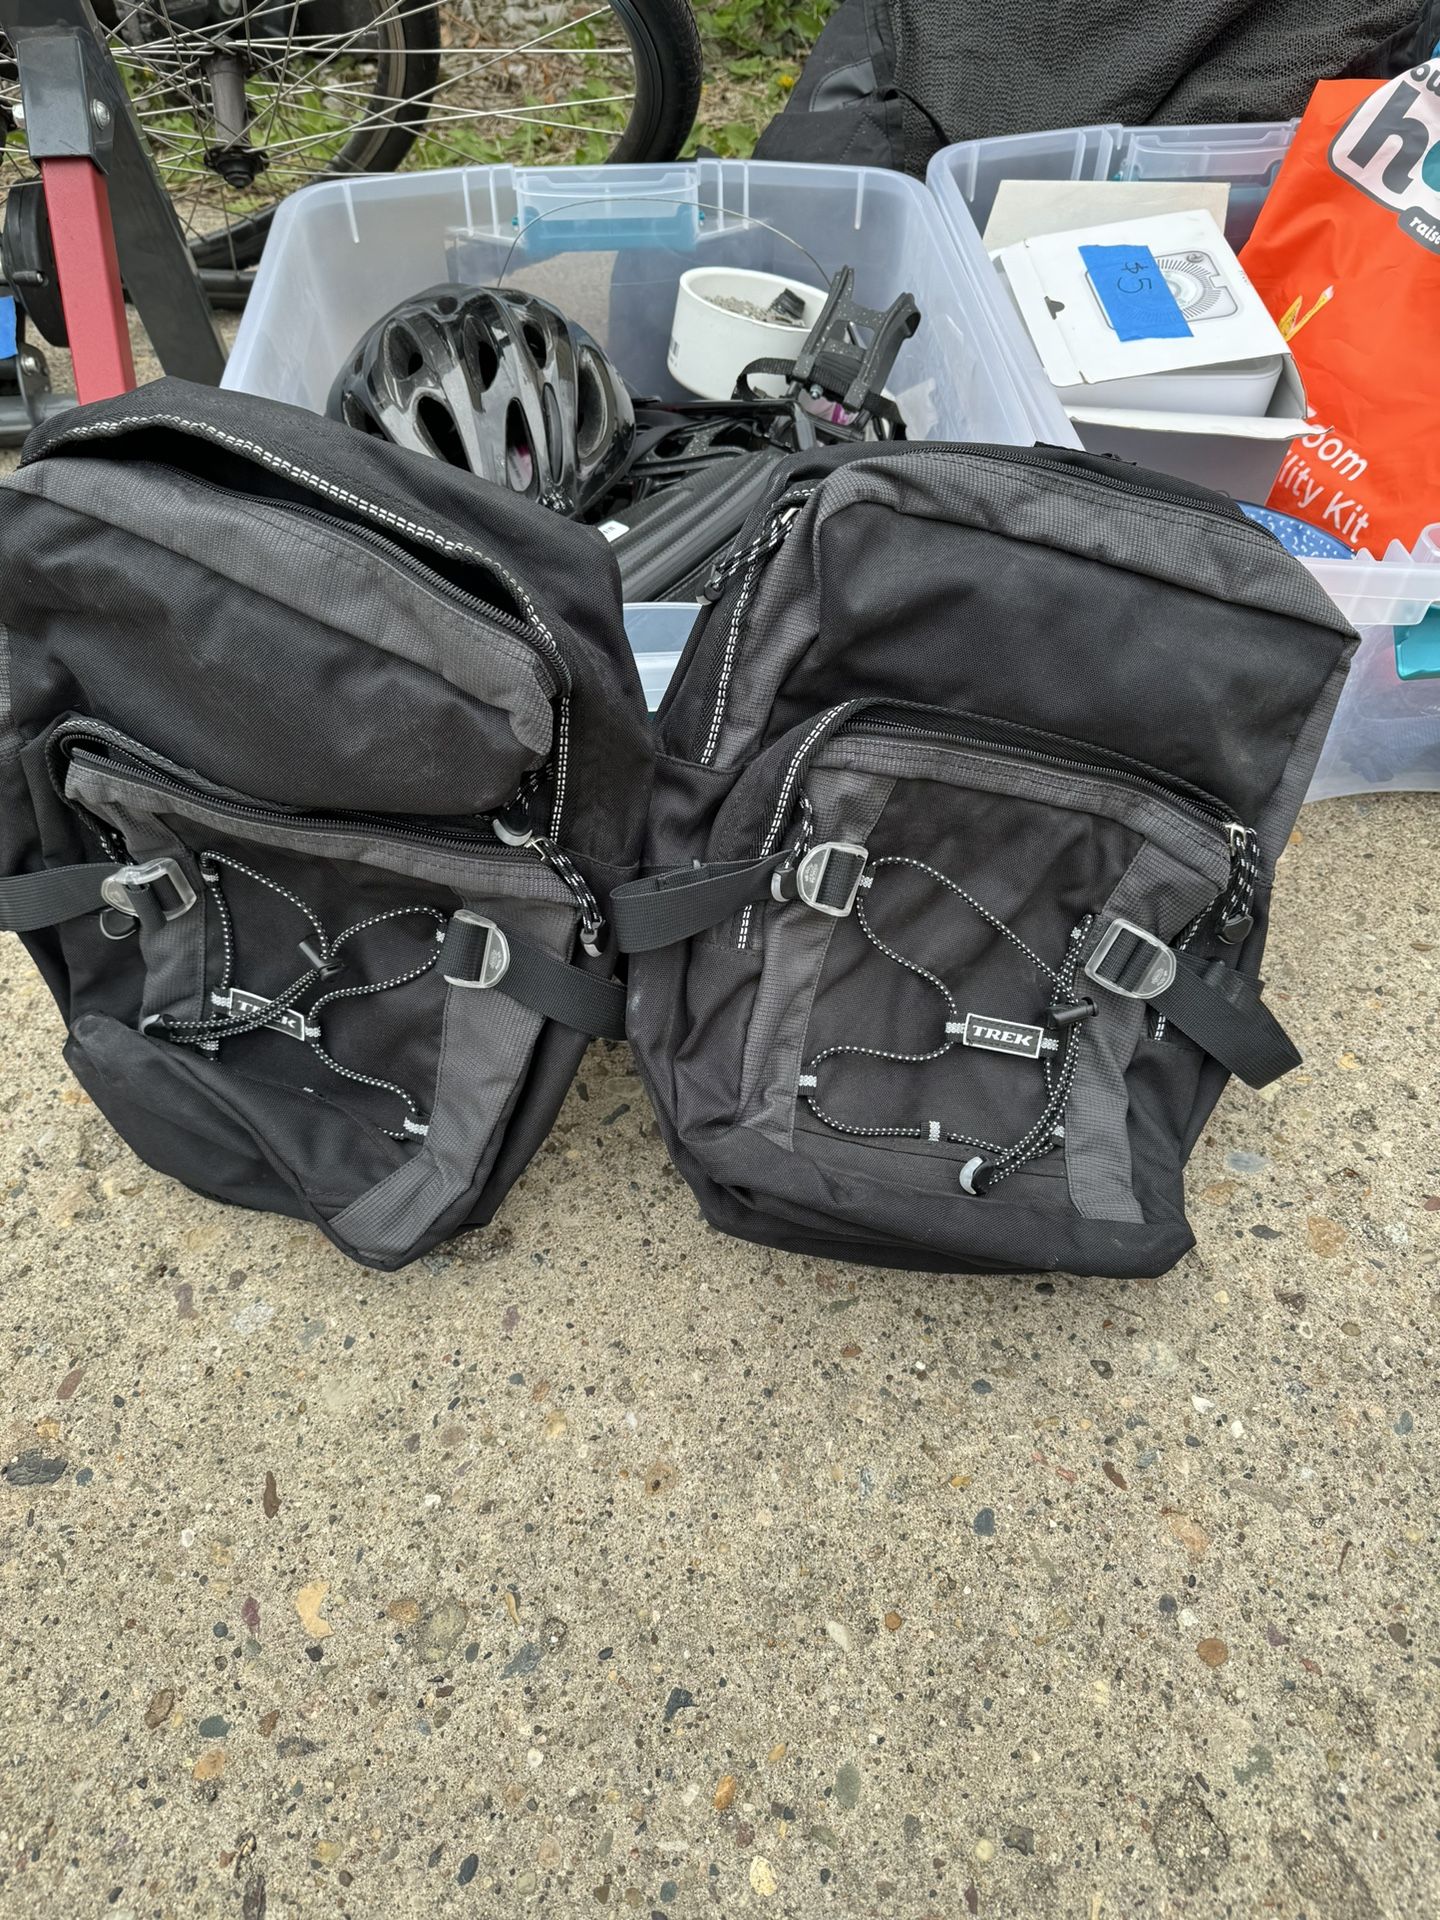 Bike Saddle Bags